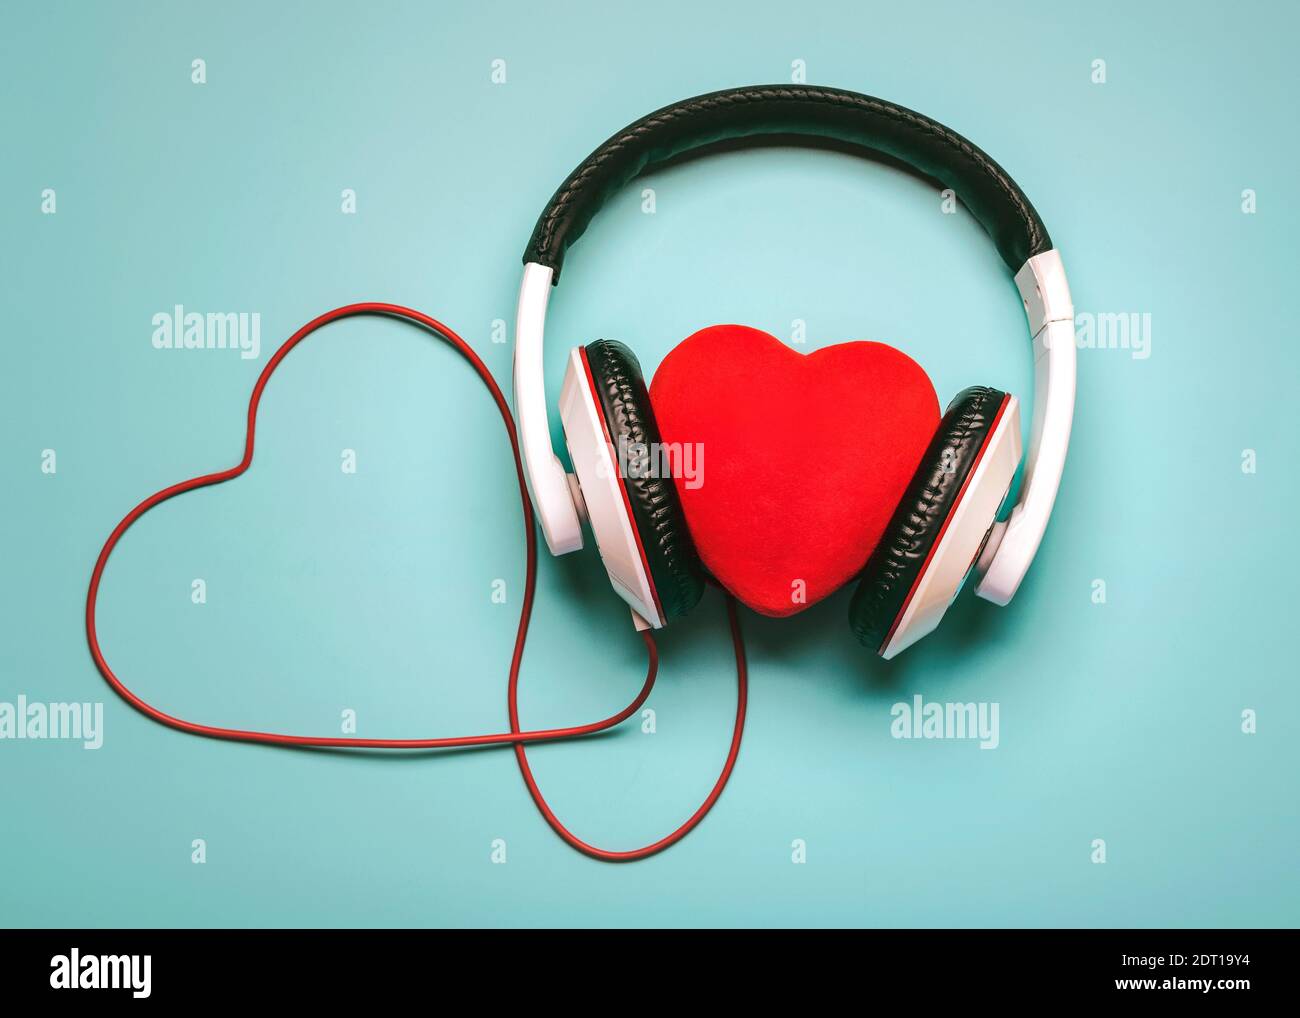 Herz mit Kopfhörern und rotem Herz-förmigen aufklappbar auf einem blauen Hintergrund.Romantisches Musikkonzept Stockfoto